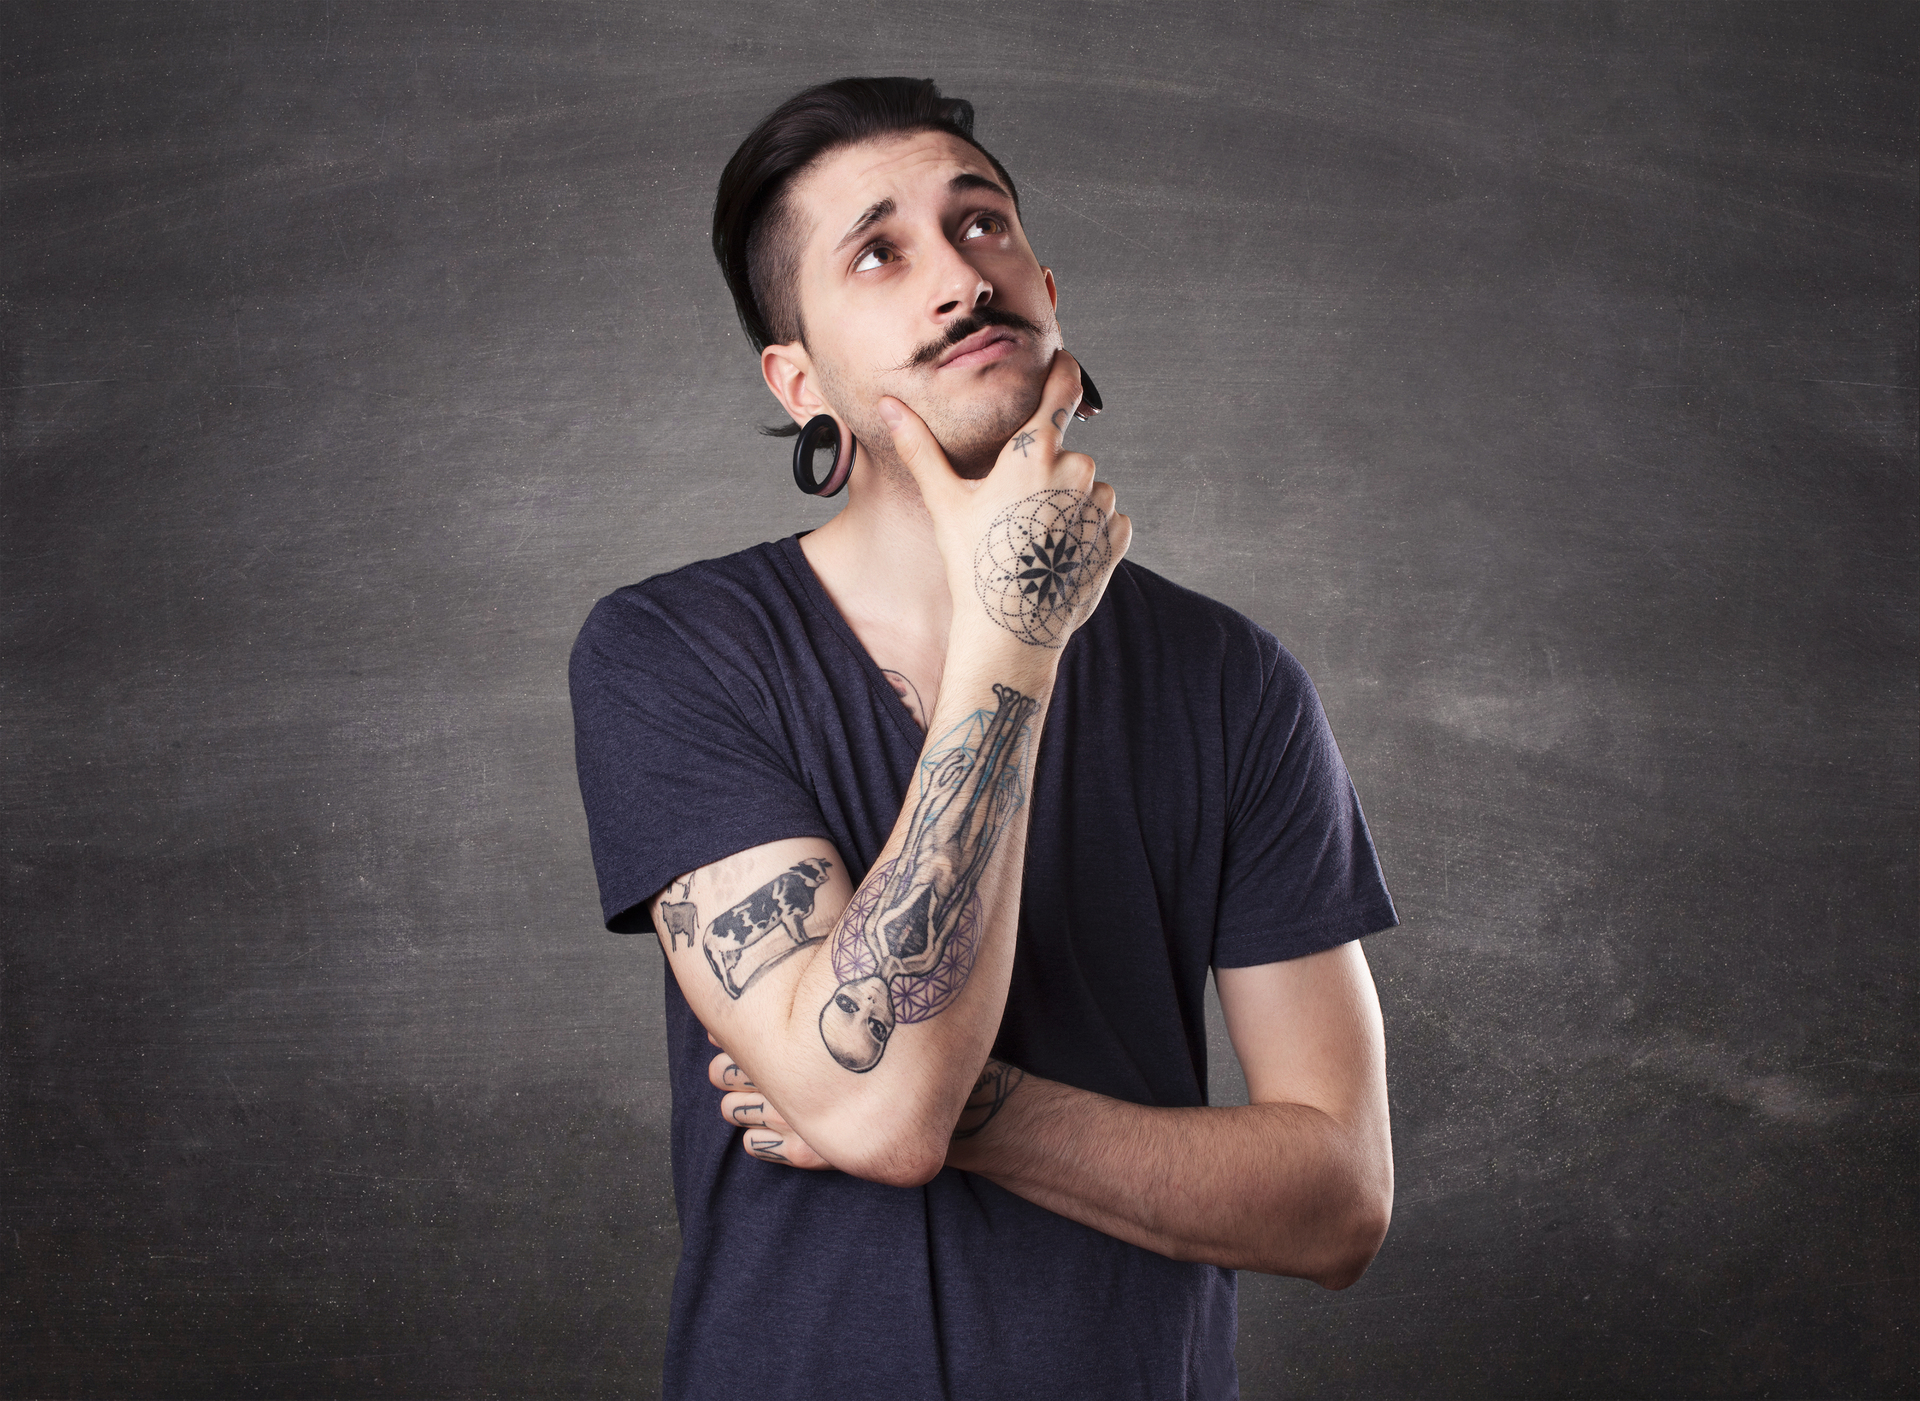 Mężczyzna z przekłutymi uszami i tatuażami na rękach zastanawia się, opierając podbródek o rękę z wyrysowanym na niej symbolem